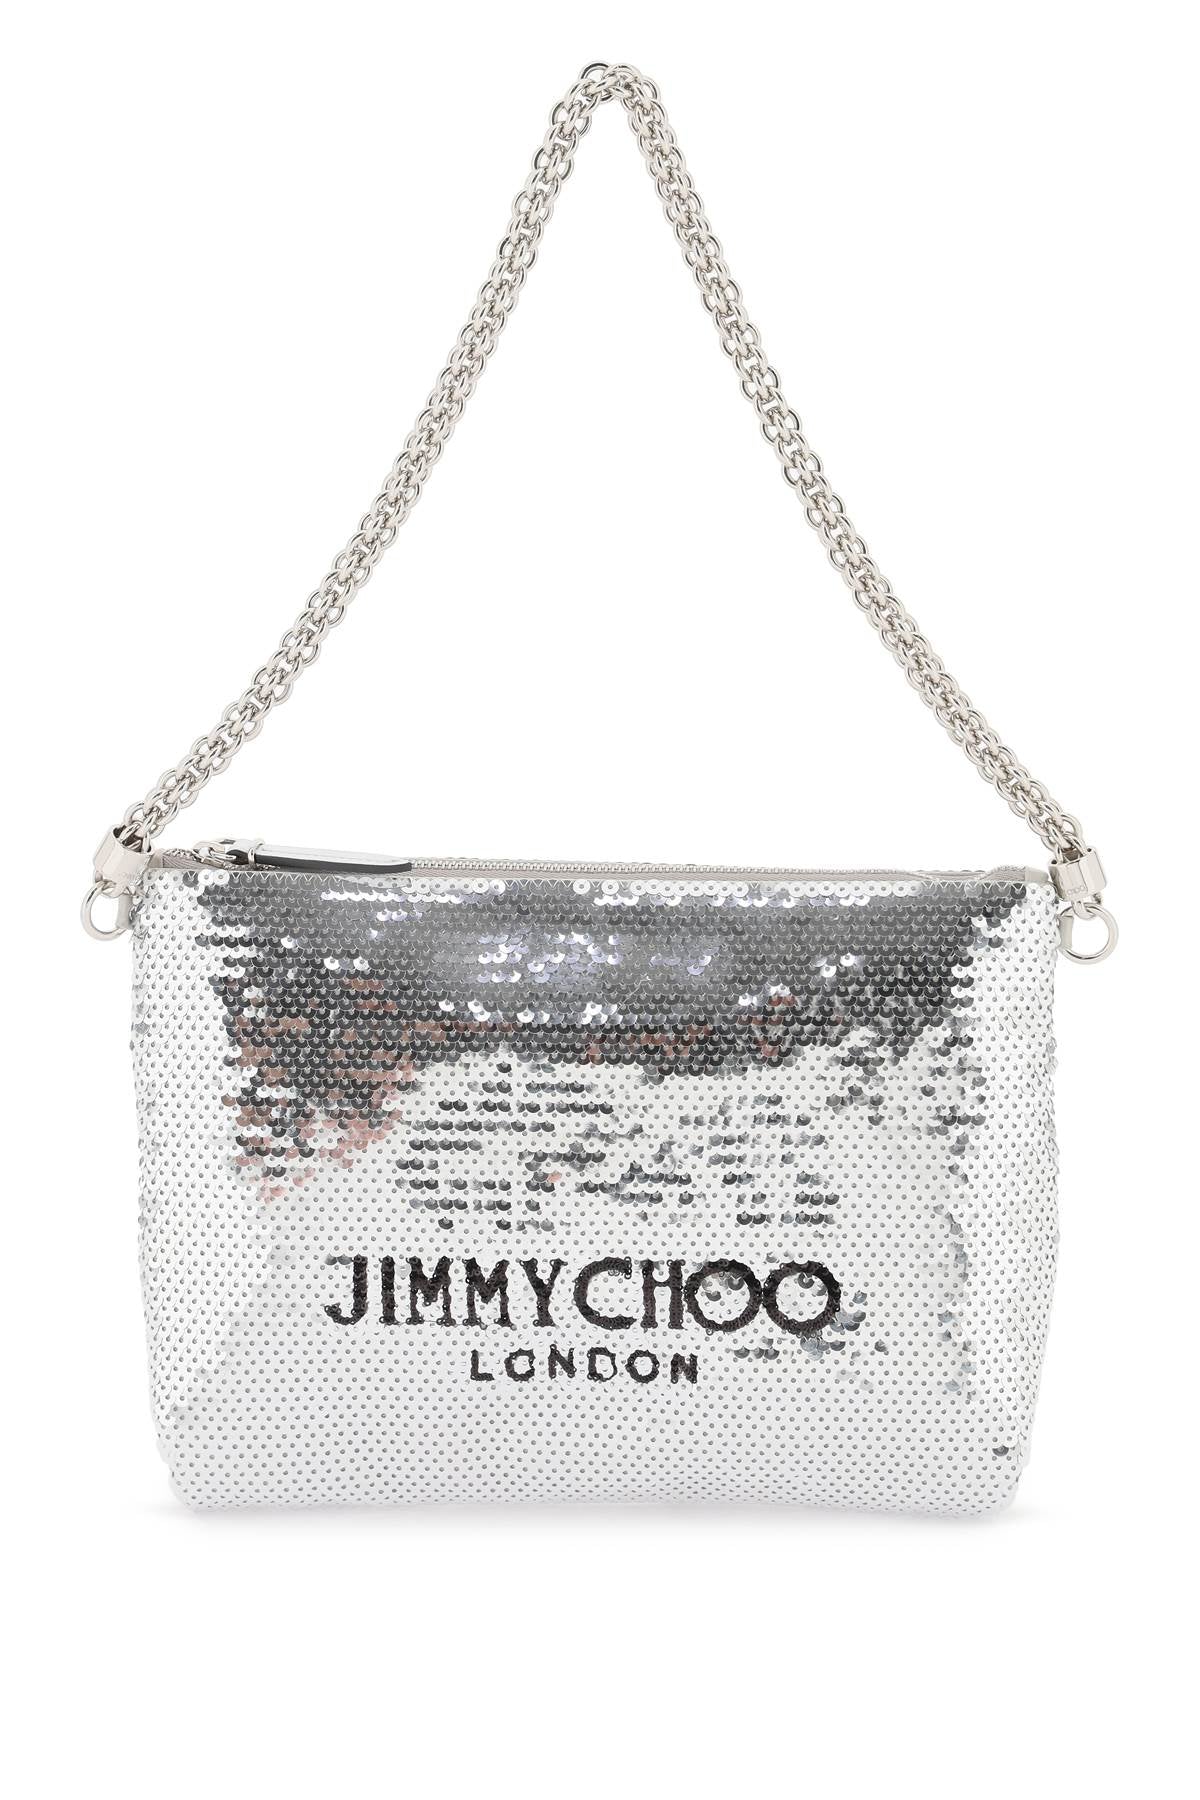 Jimmy choo callie shoulder bag-0